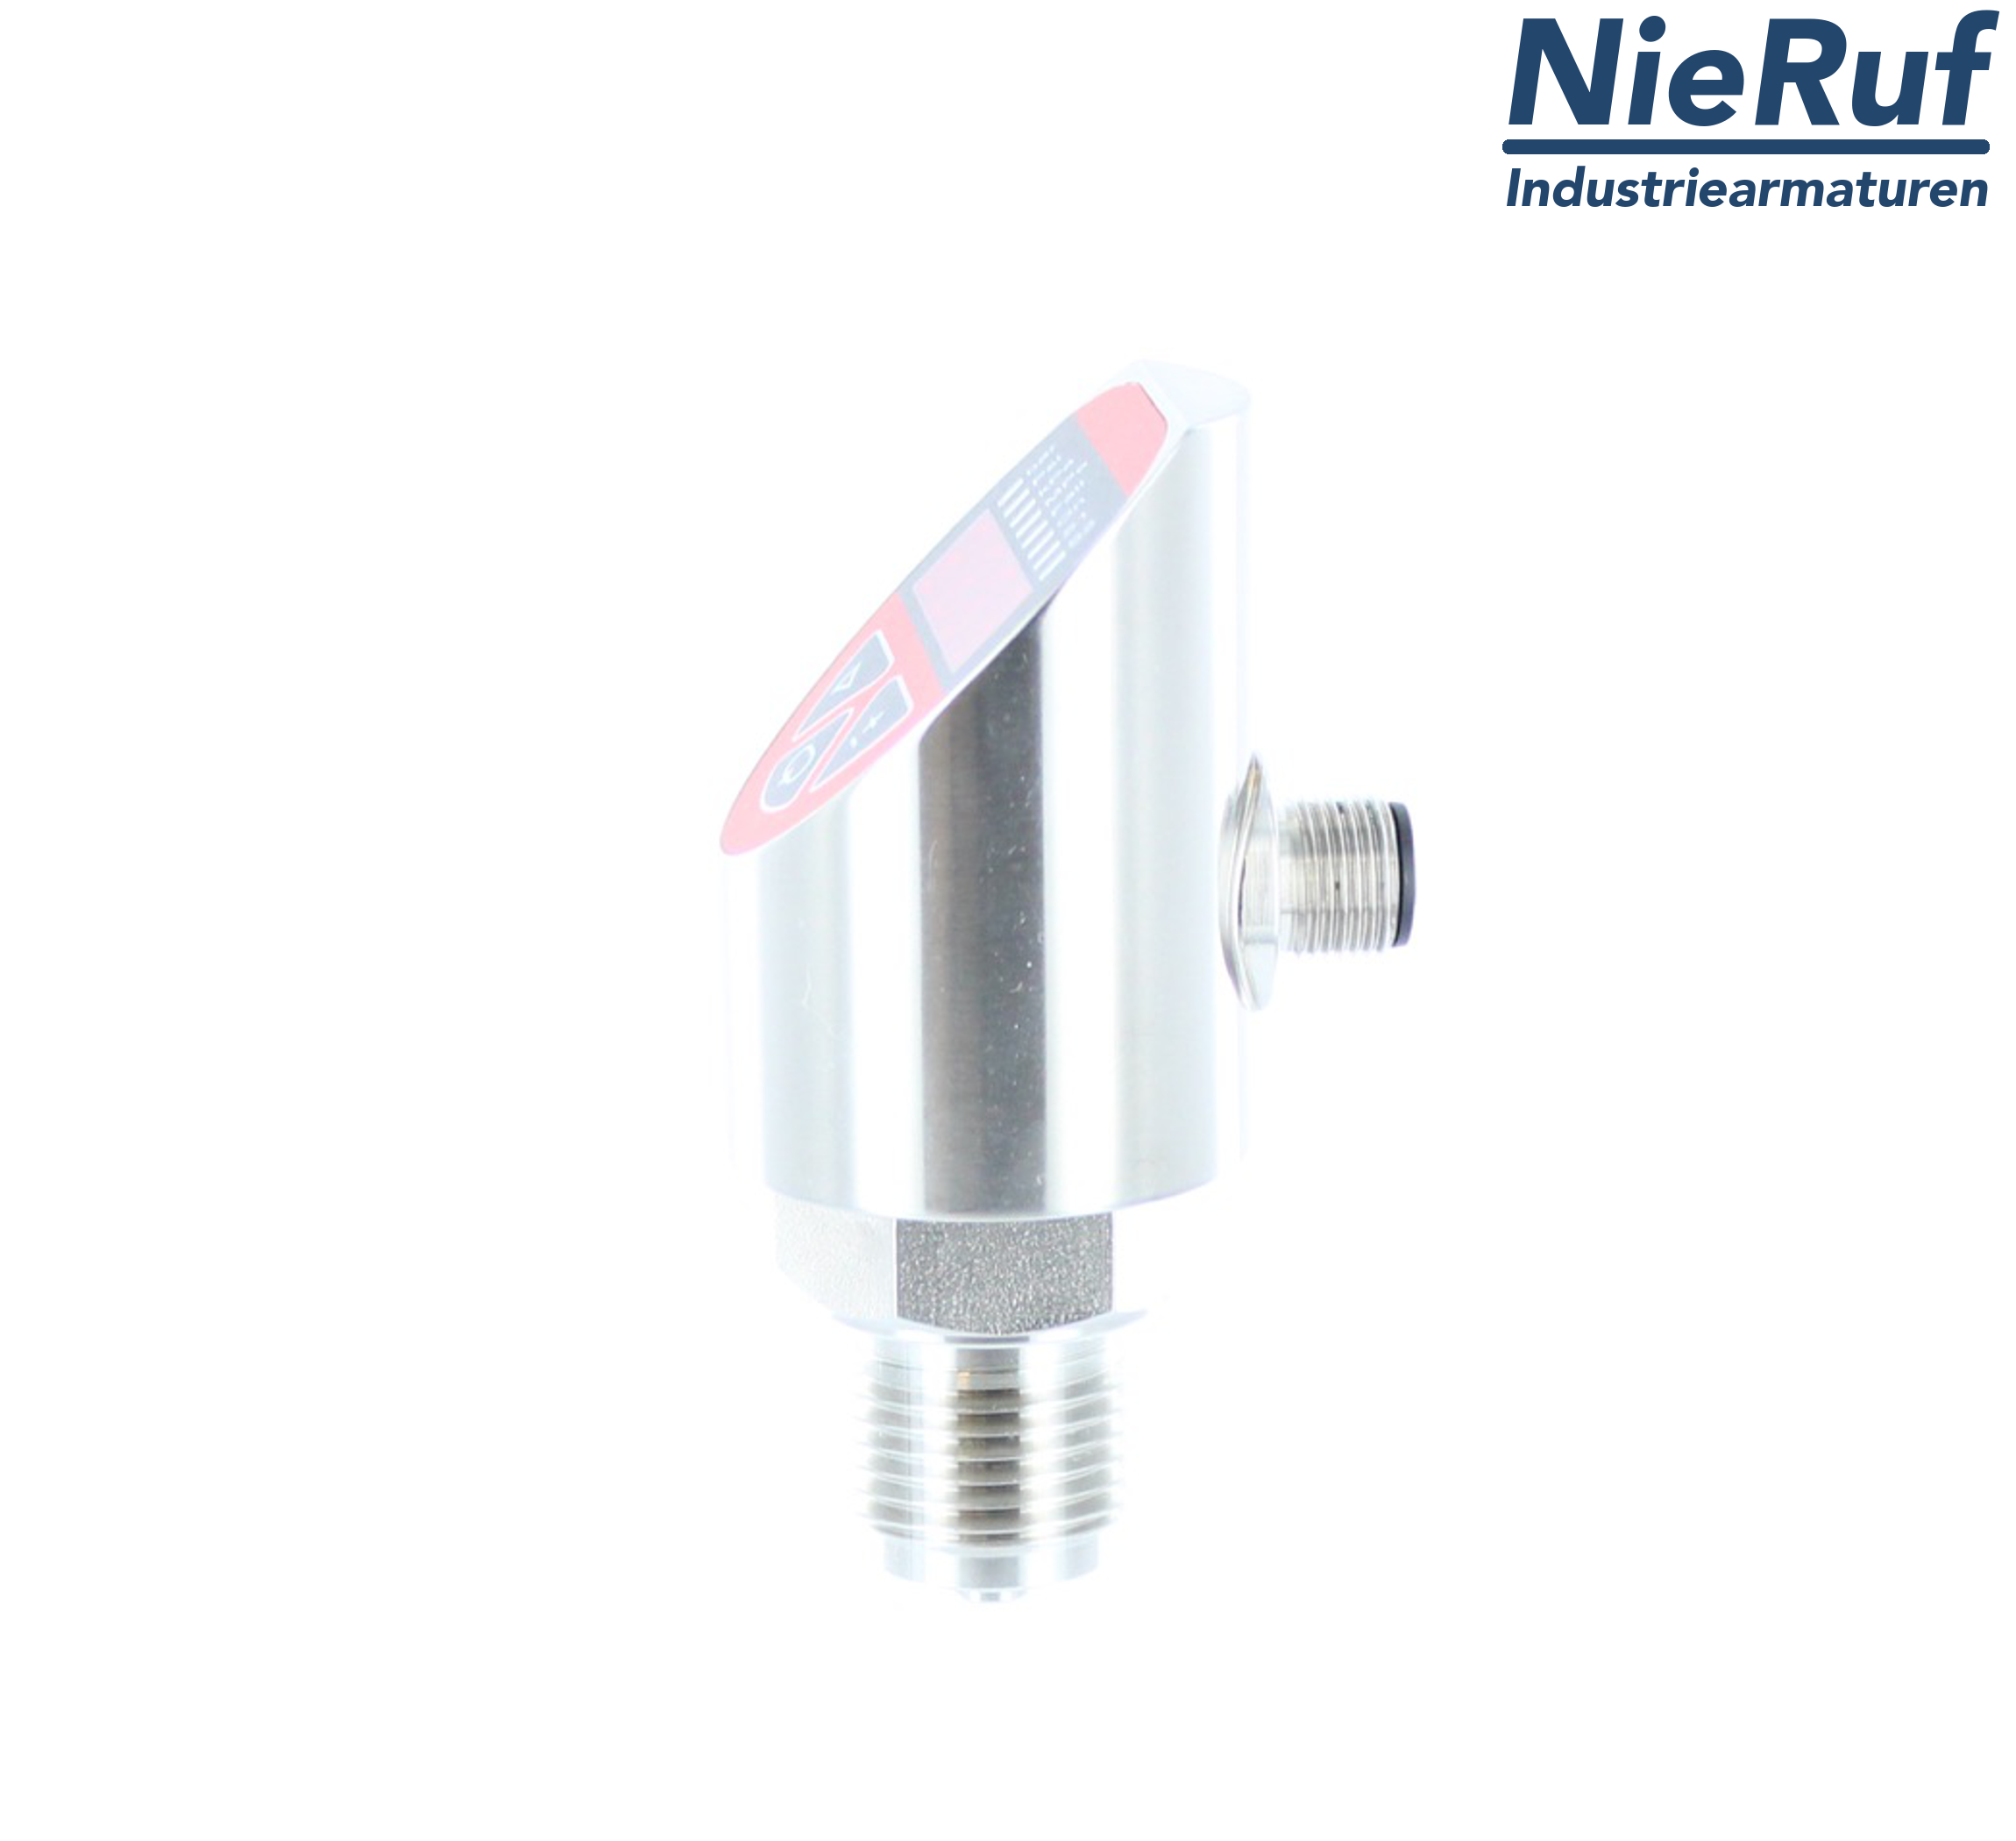 digital pressure sensor G 1/2" B IB 5-wire: 2xPNP, 1x4 - 20mA FPM 0,0 - 2,5 bar